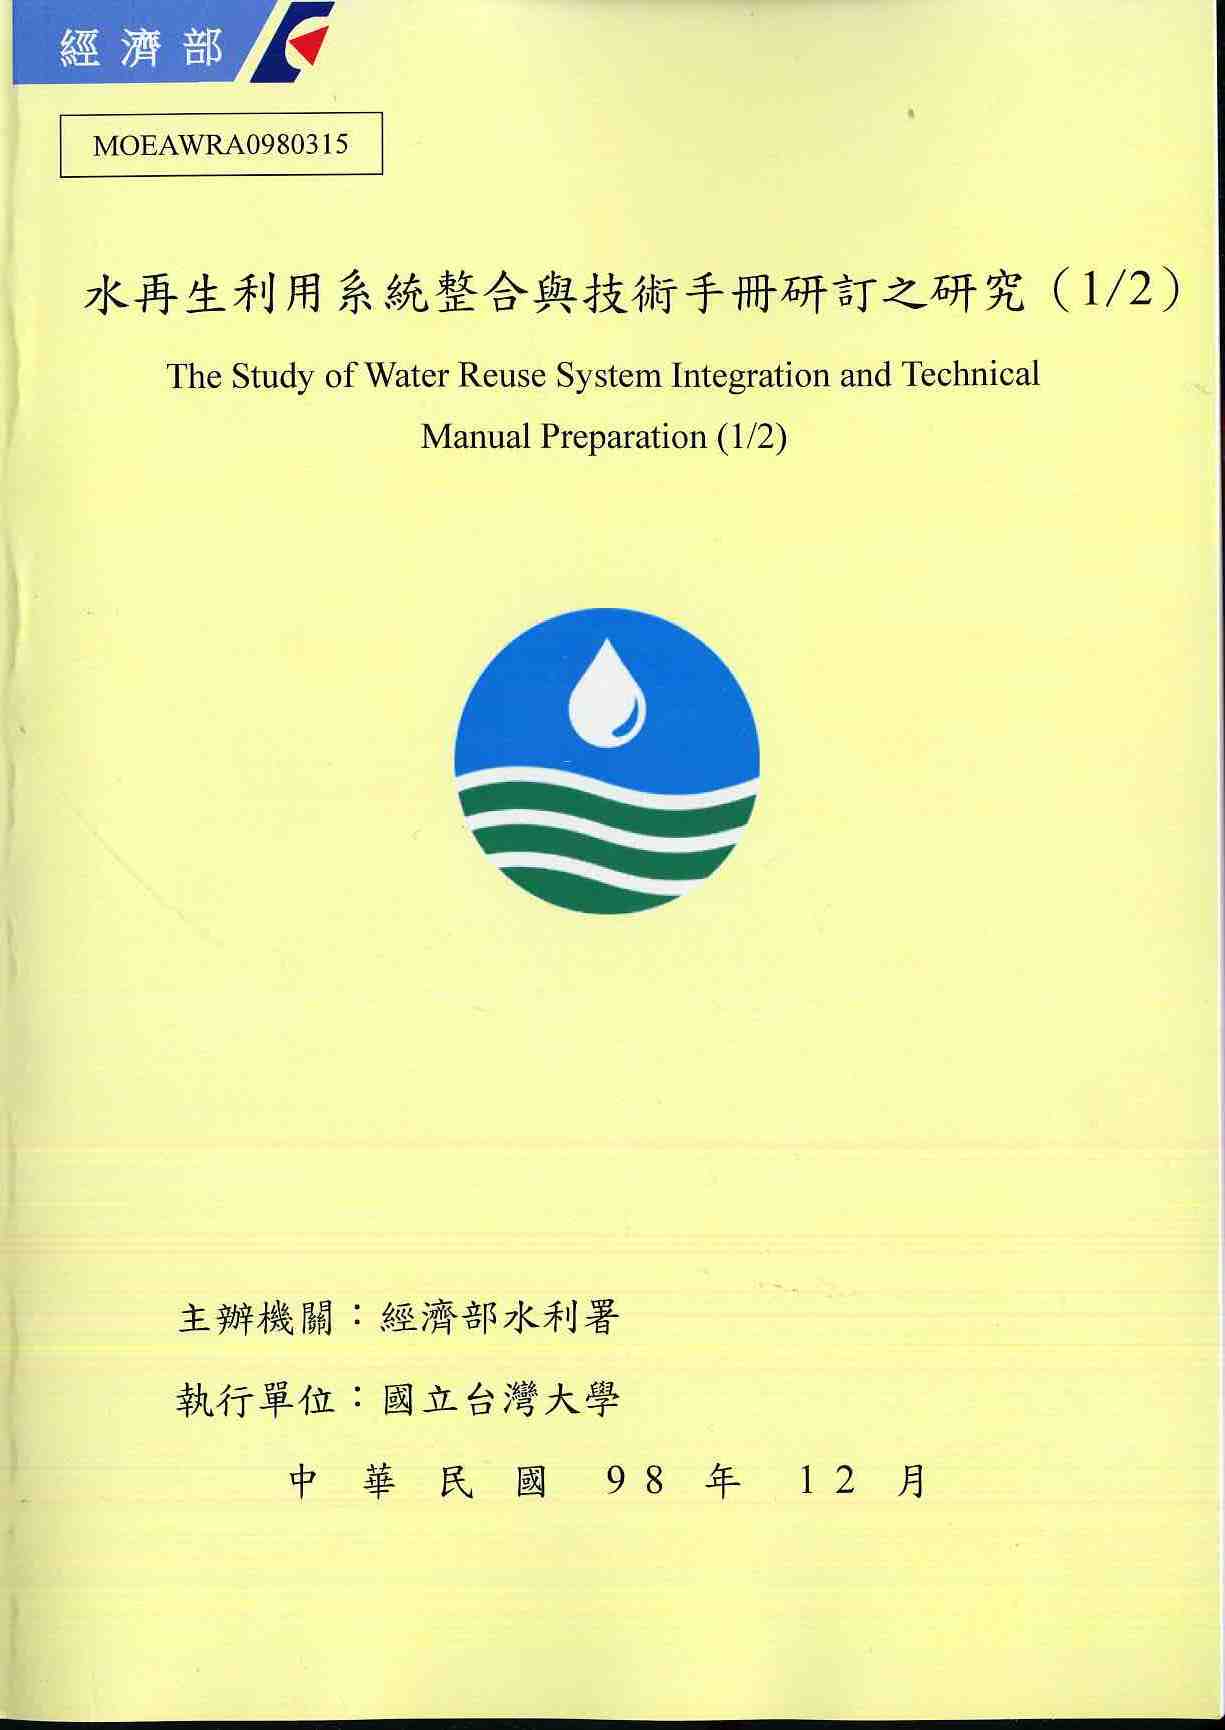 水再生利用系統整合與技術手冊研訂之研究(1/2)